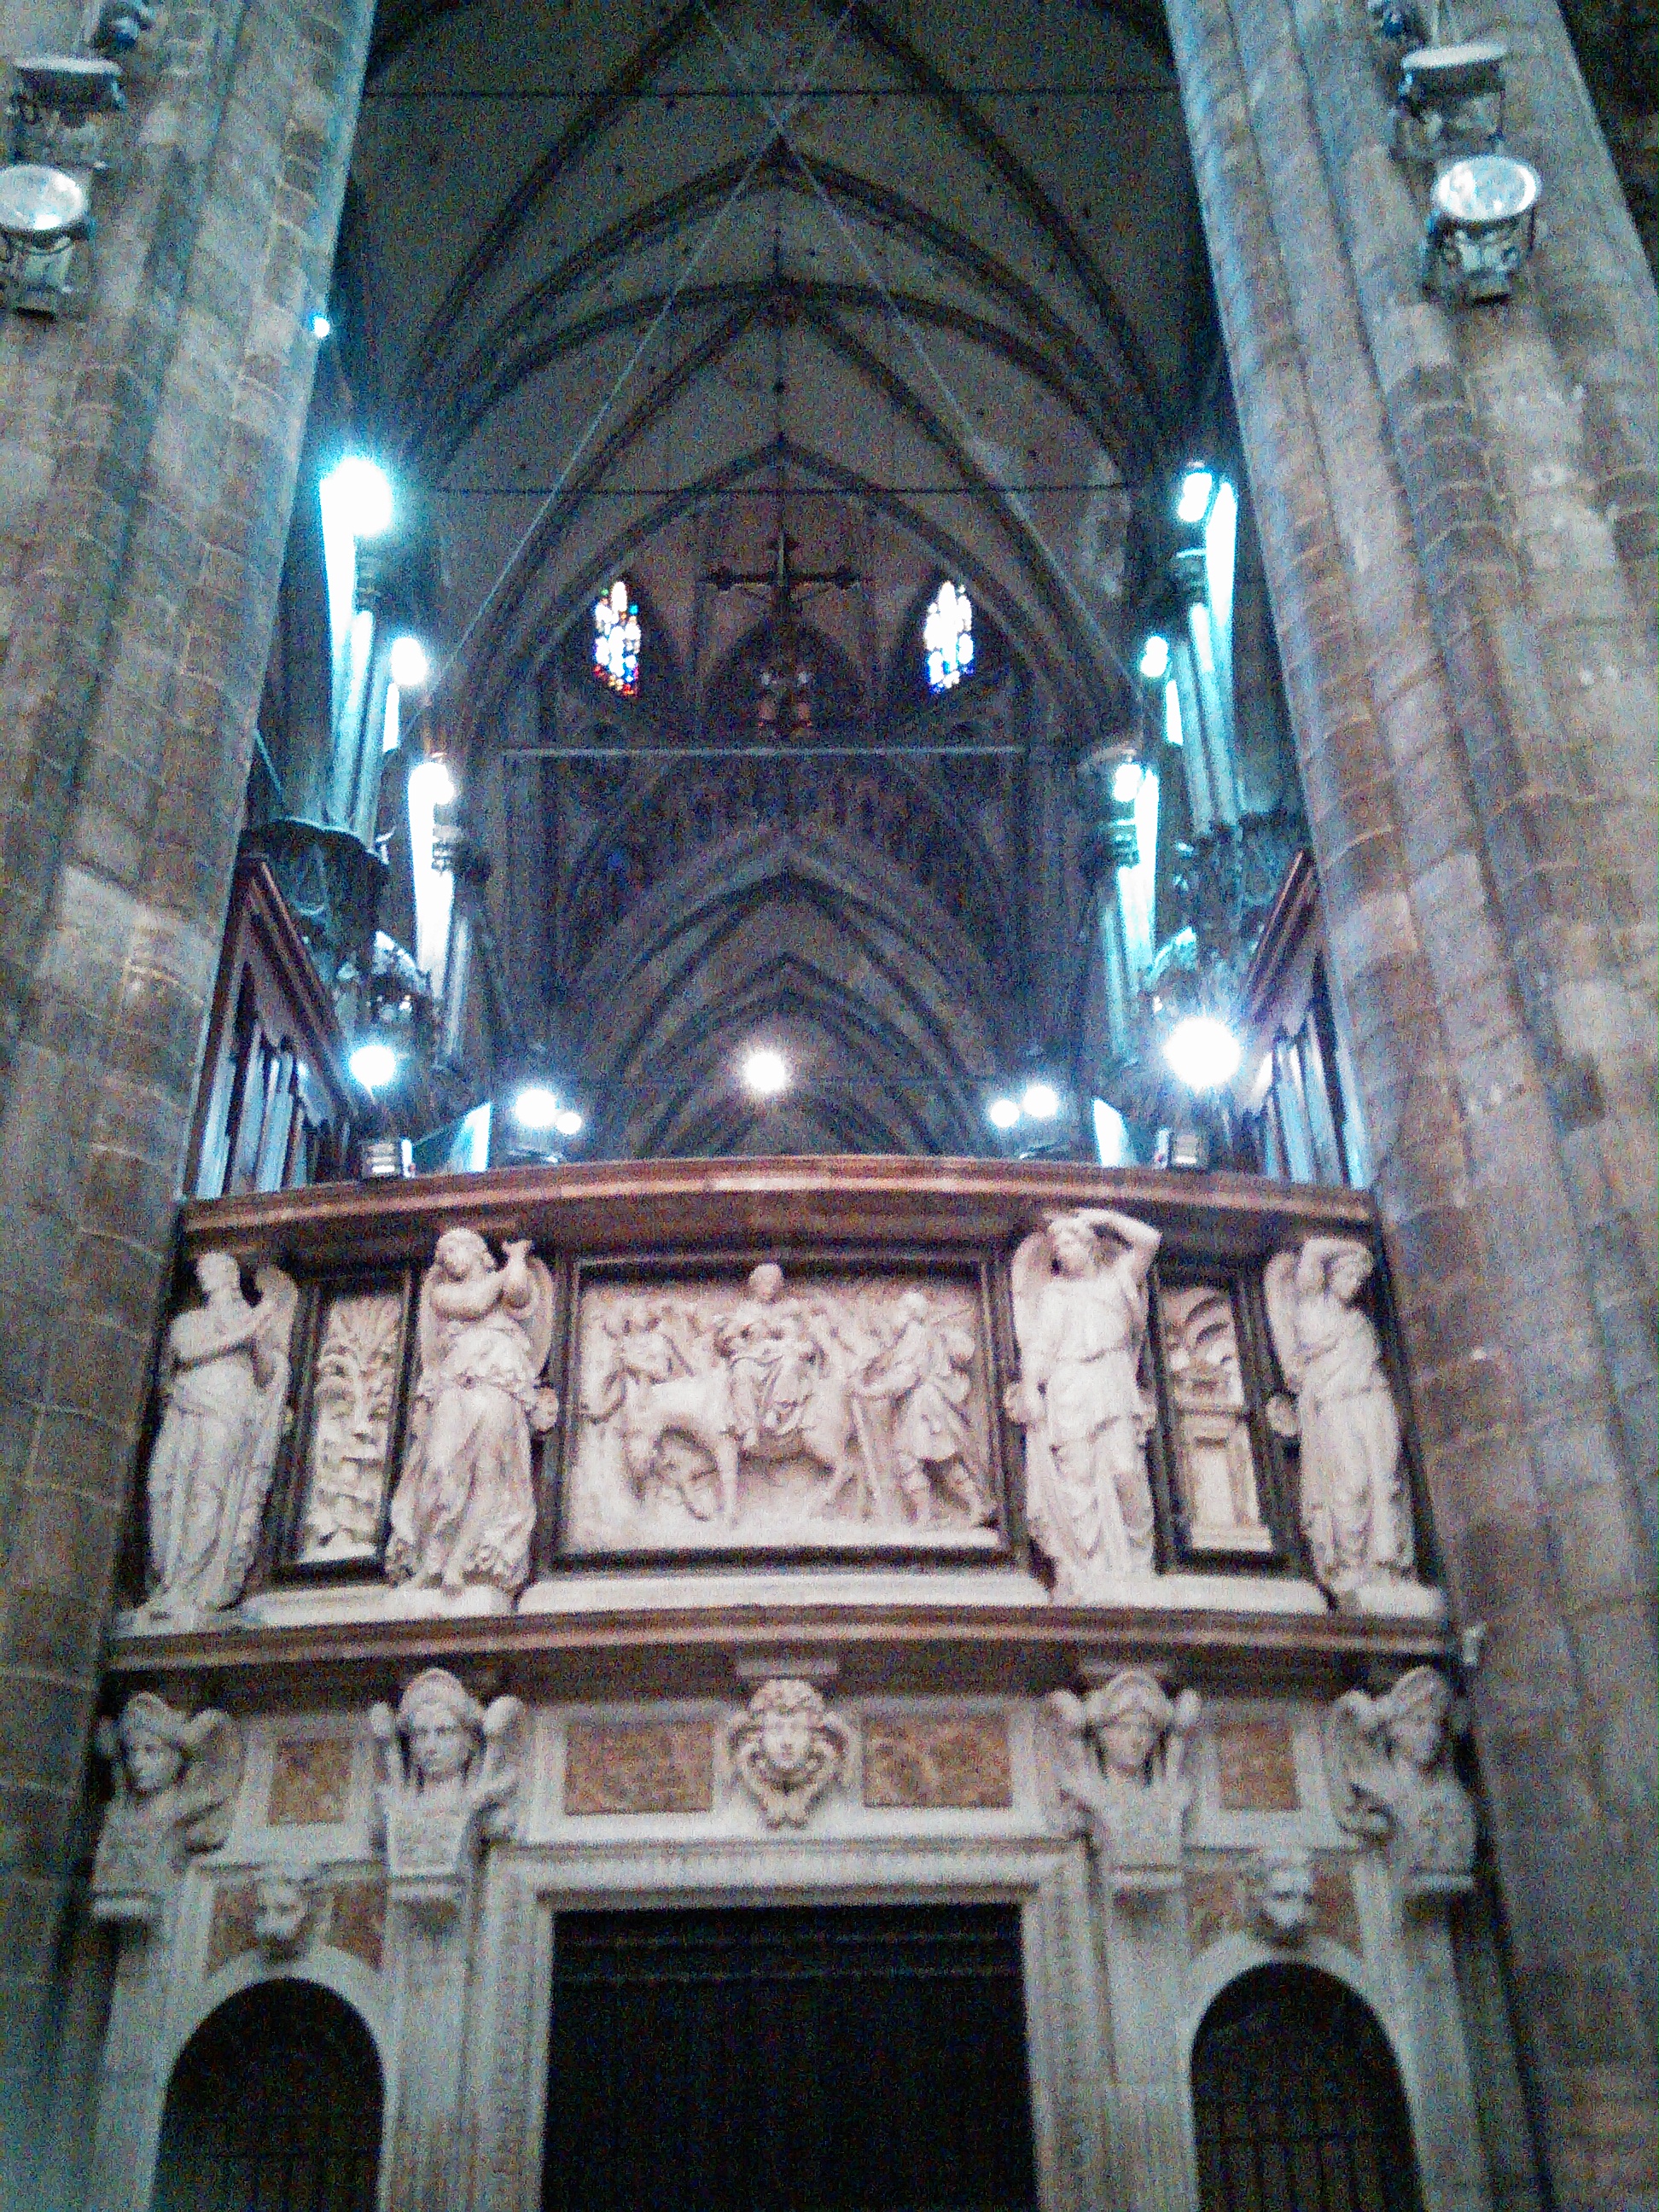 Duomo (2)